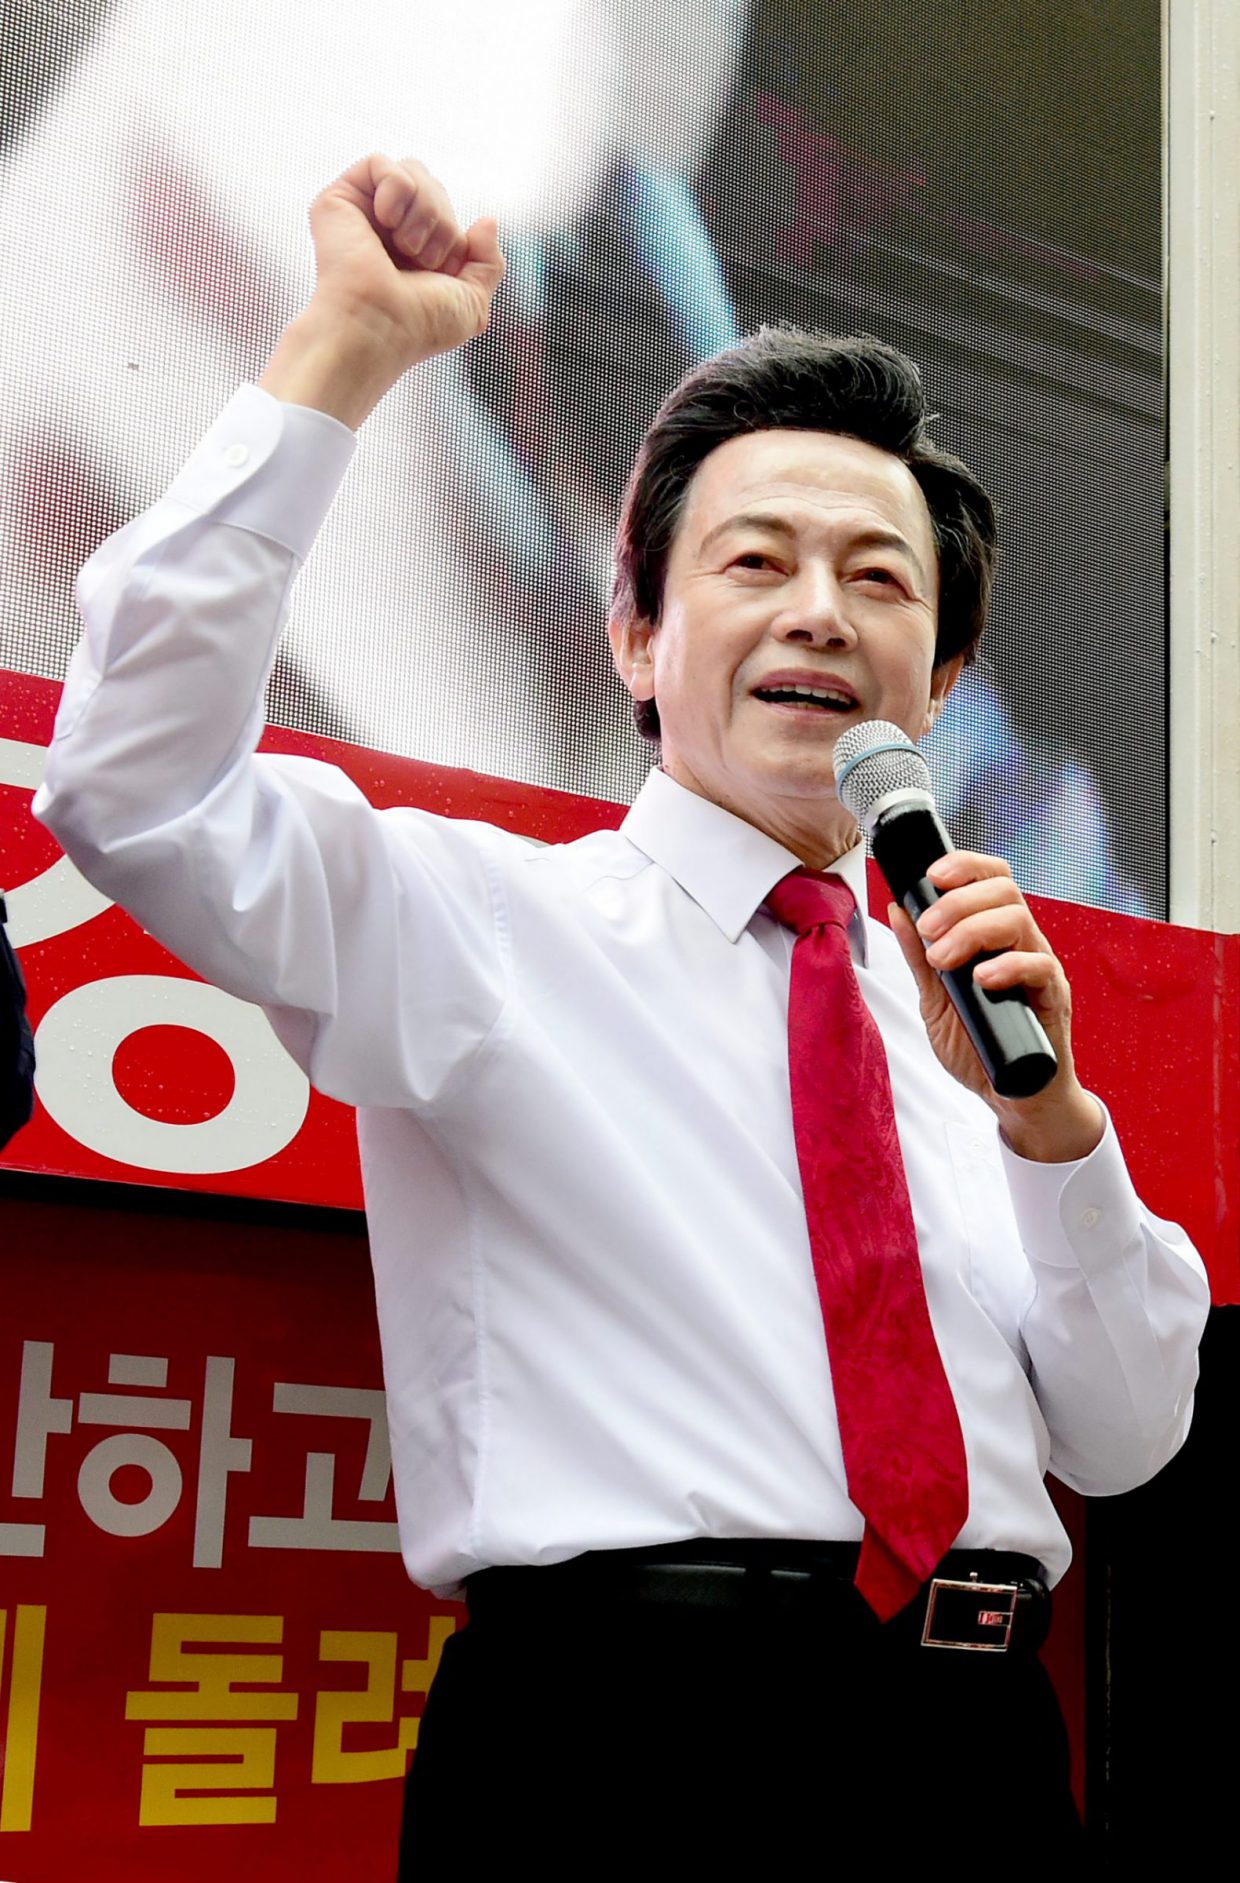 Ứng cử viên Tổng thống Huh Kyung Young đề nghị mua lại số điện thoại bị lộ trên 'Squid Game' với giá gần 2 tỷ đồng